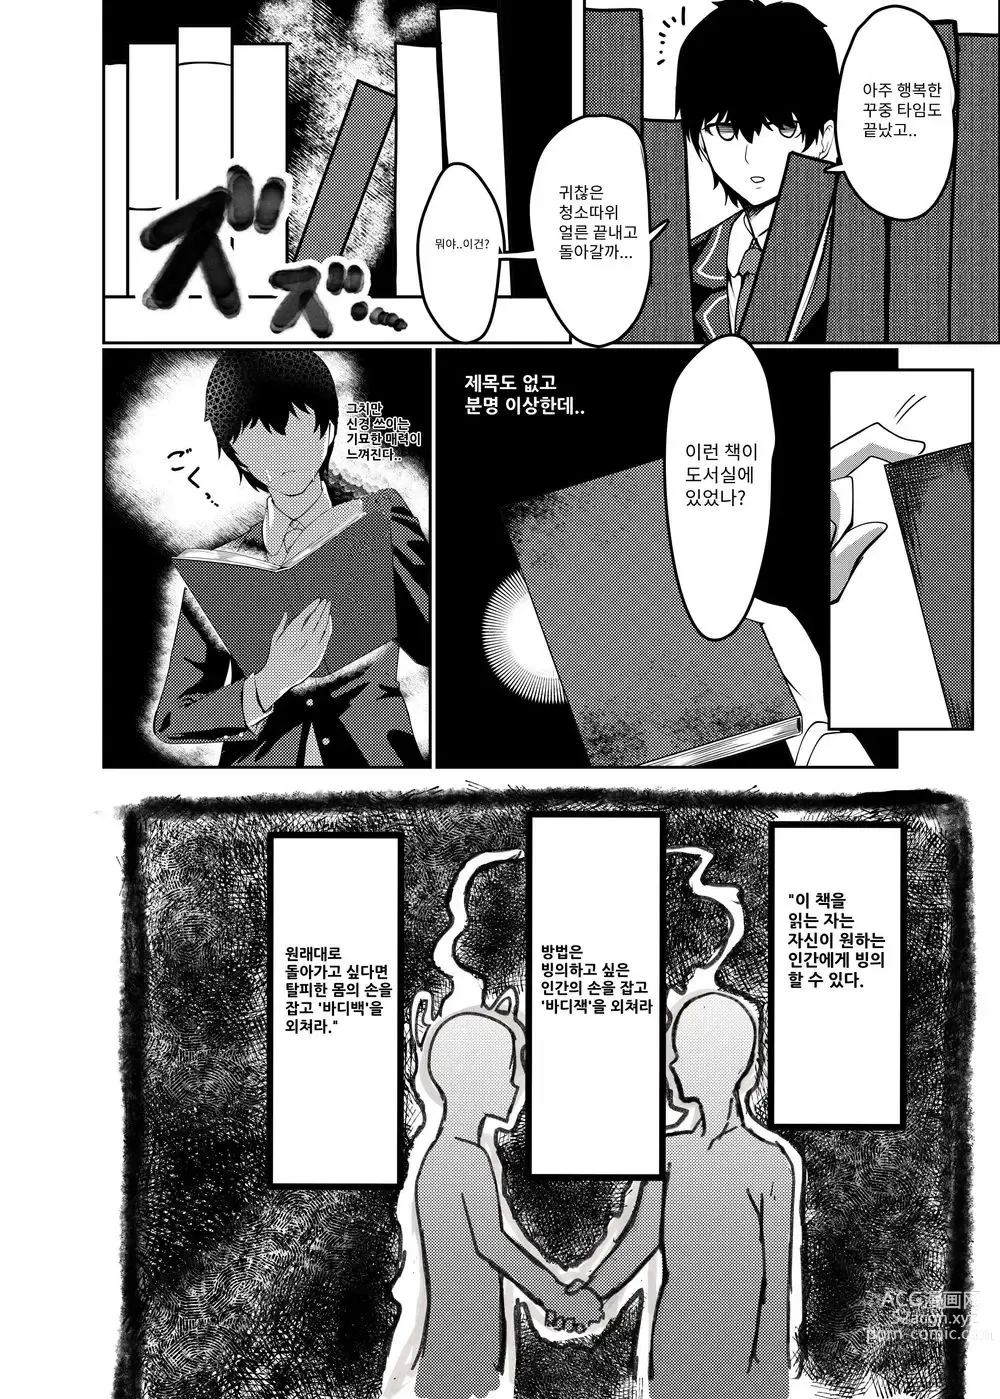 Page 3 of doujinshi 나는 미아무라 선생님